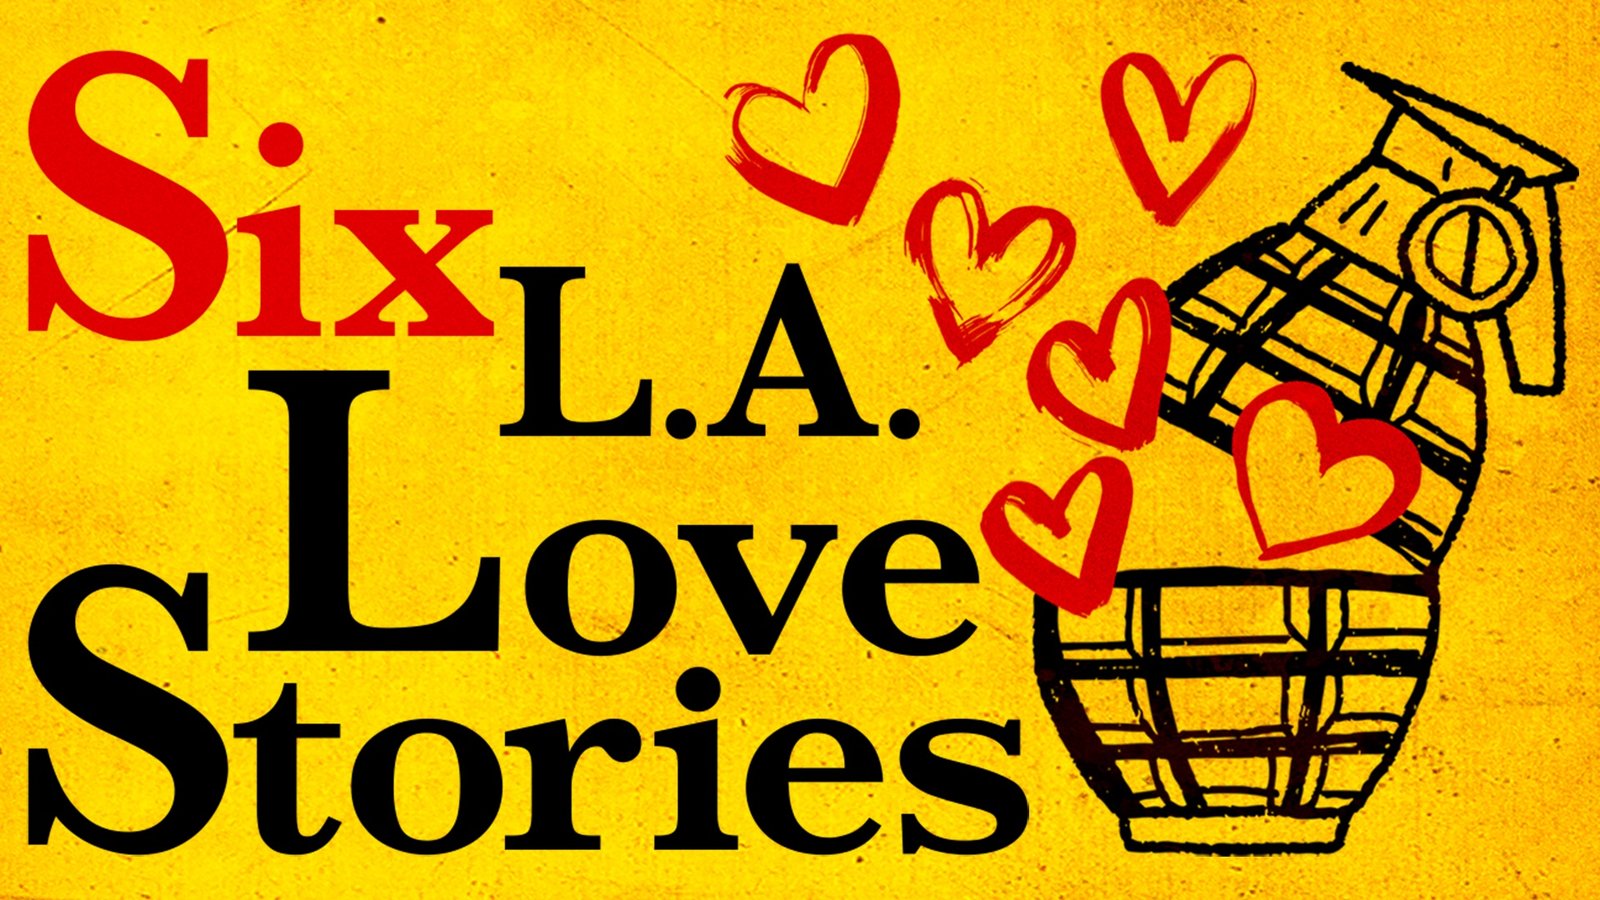 Six L.A. Love Stories